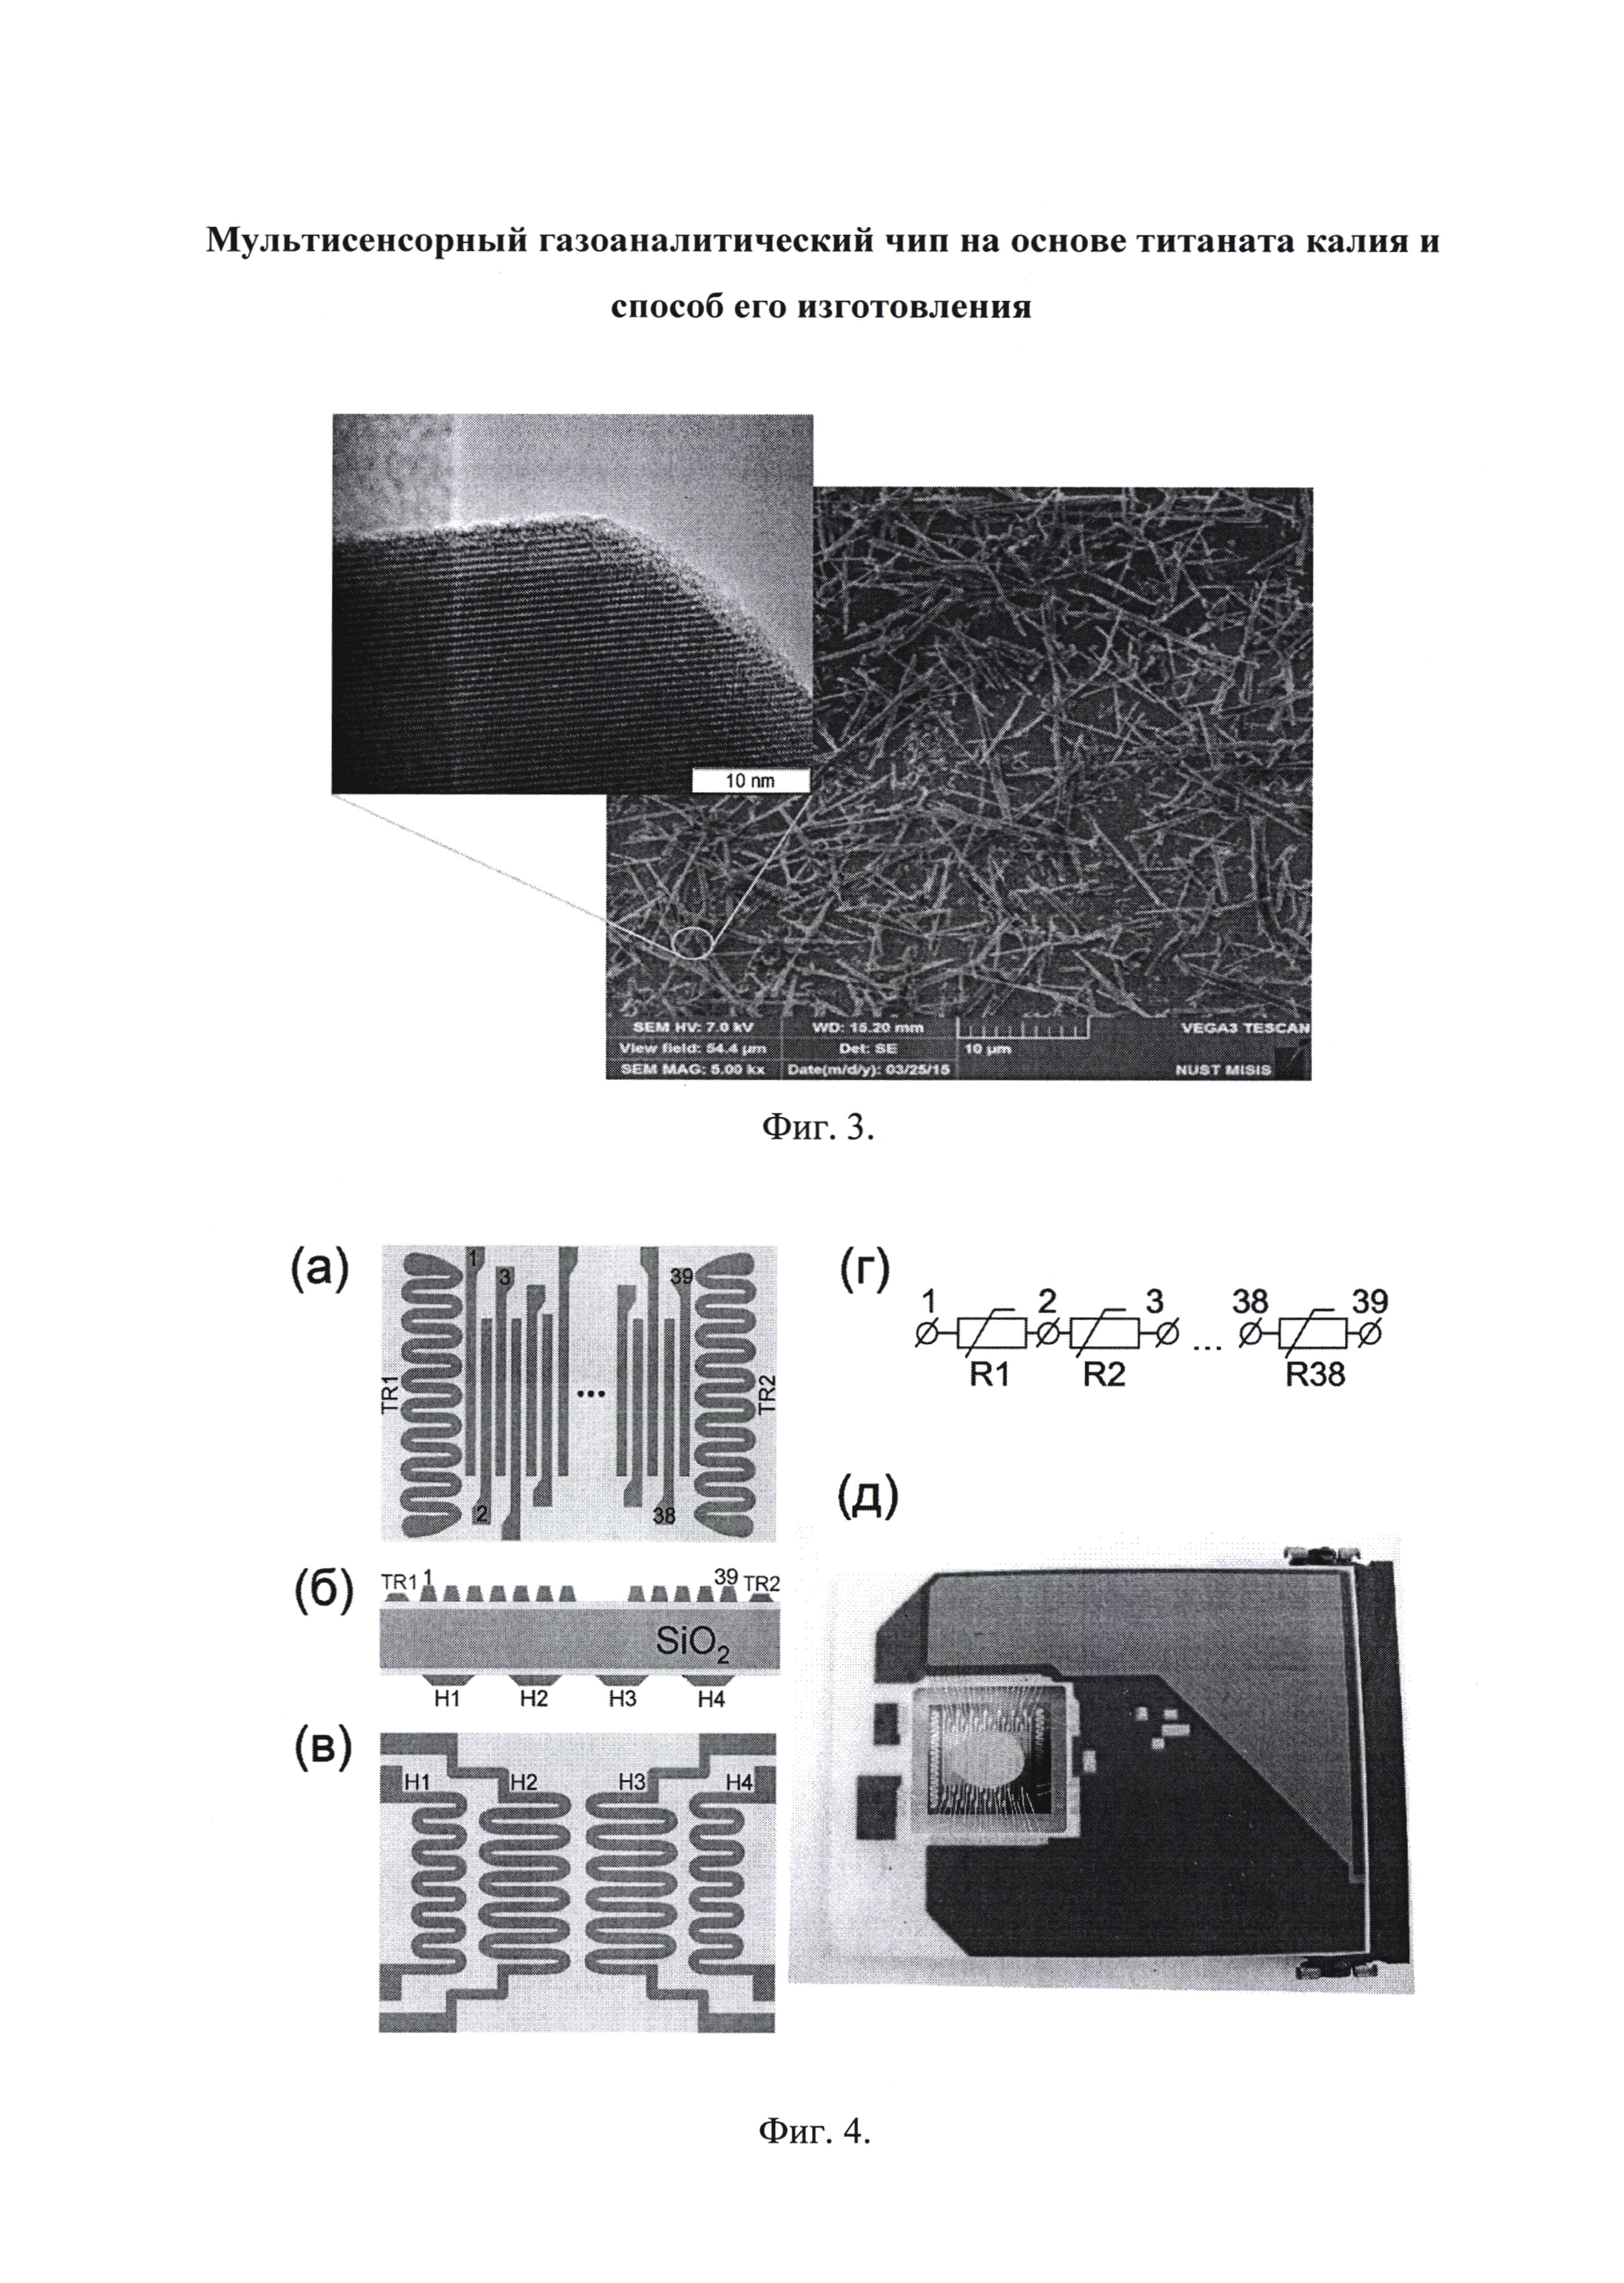 Мультисенсорный газоаналитический чип на основе титаната калия и способ его изготовления